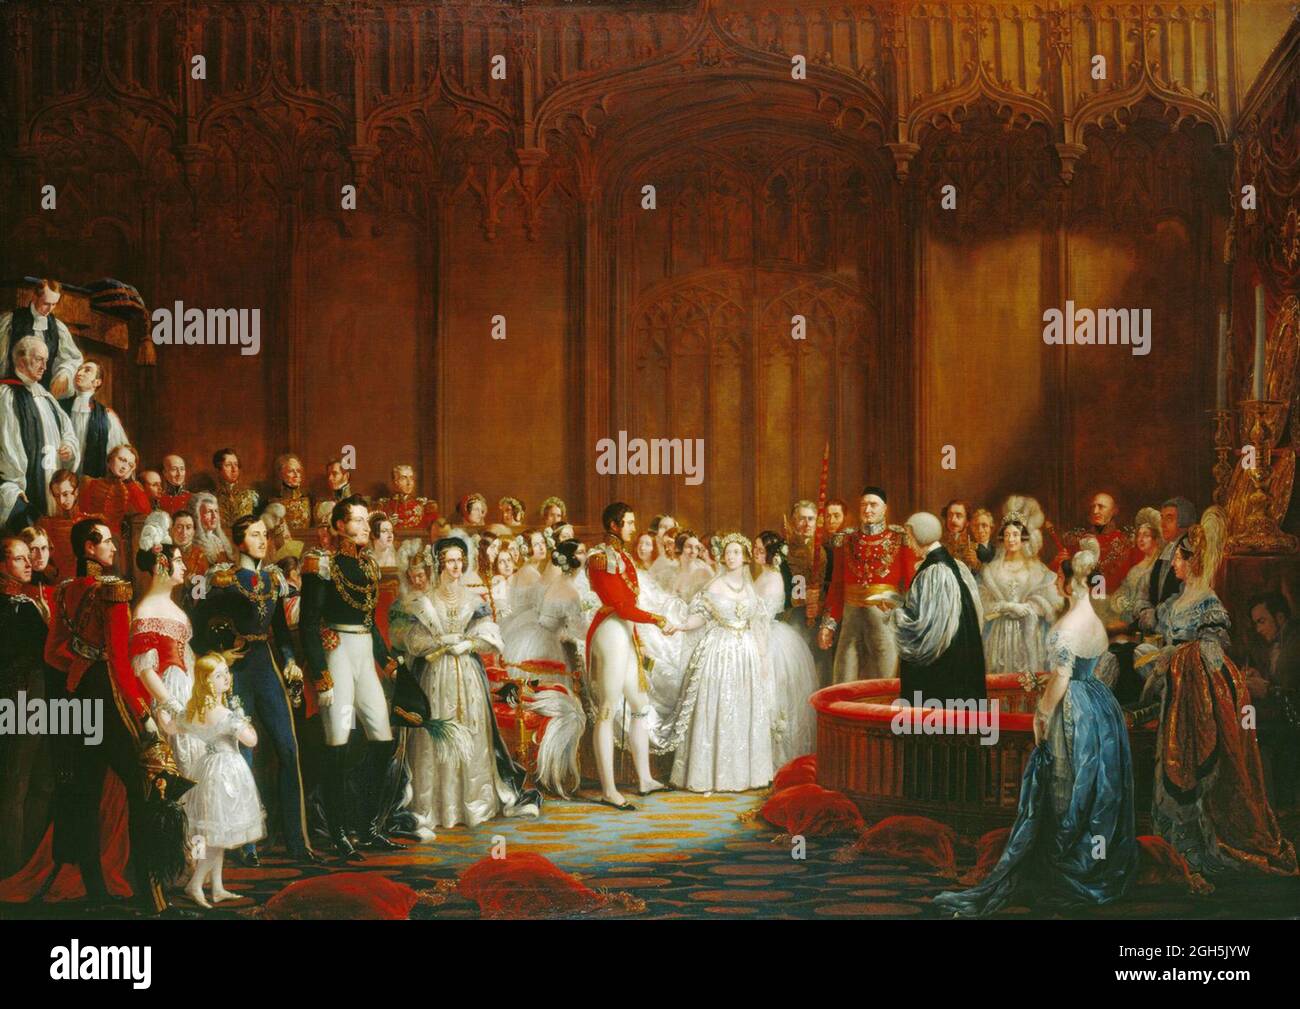 Ein Gemälde der Hochzeit von Königin Victoria mit Albert (Prinz Albert von Sachsen-Coburg und Gotha) Stockfoto